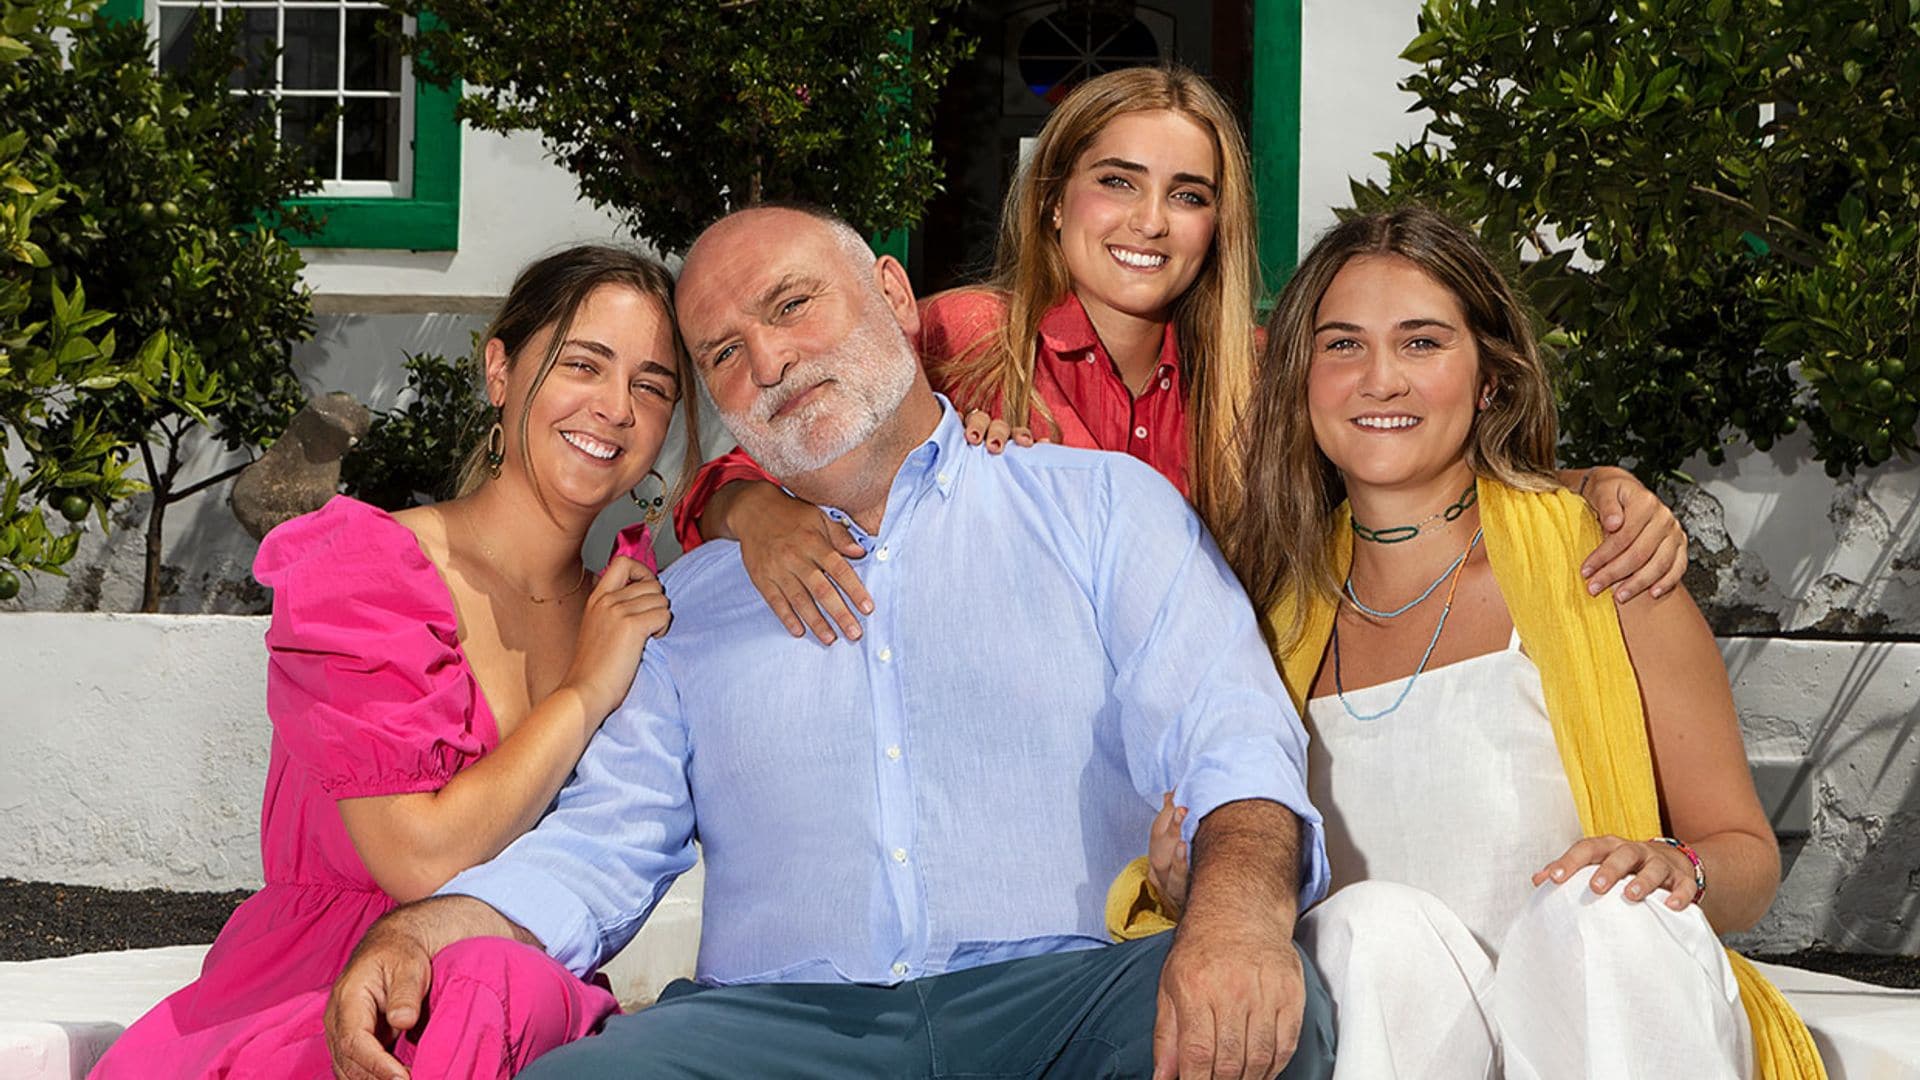 Conoce a las tres hijas estadounidenses de José Andrés durante su viaje gastronómico por España